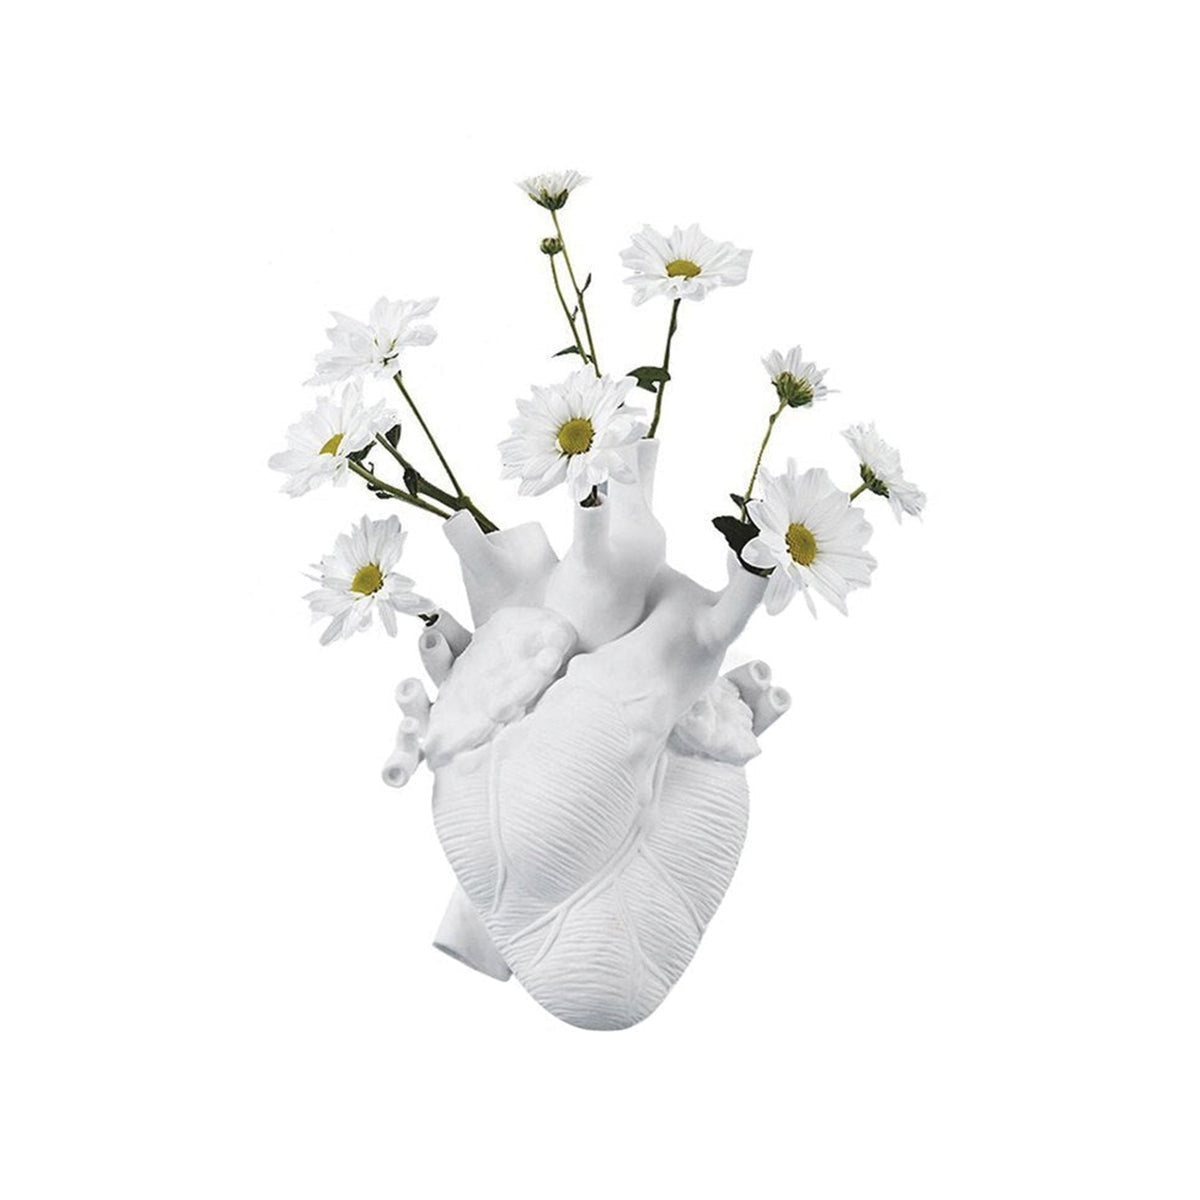 White Heart Ceramic Vase